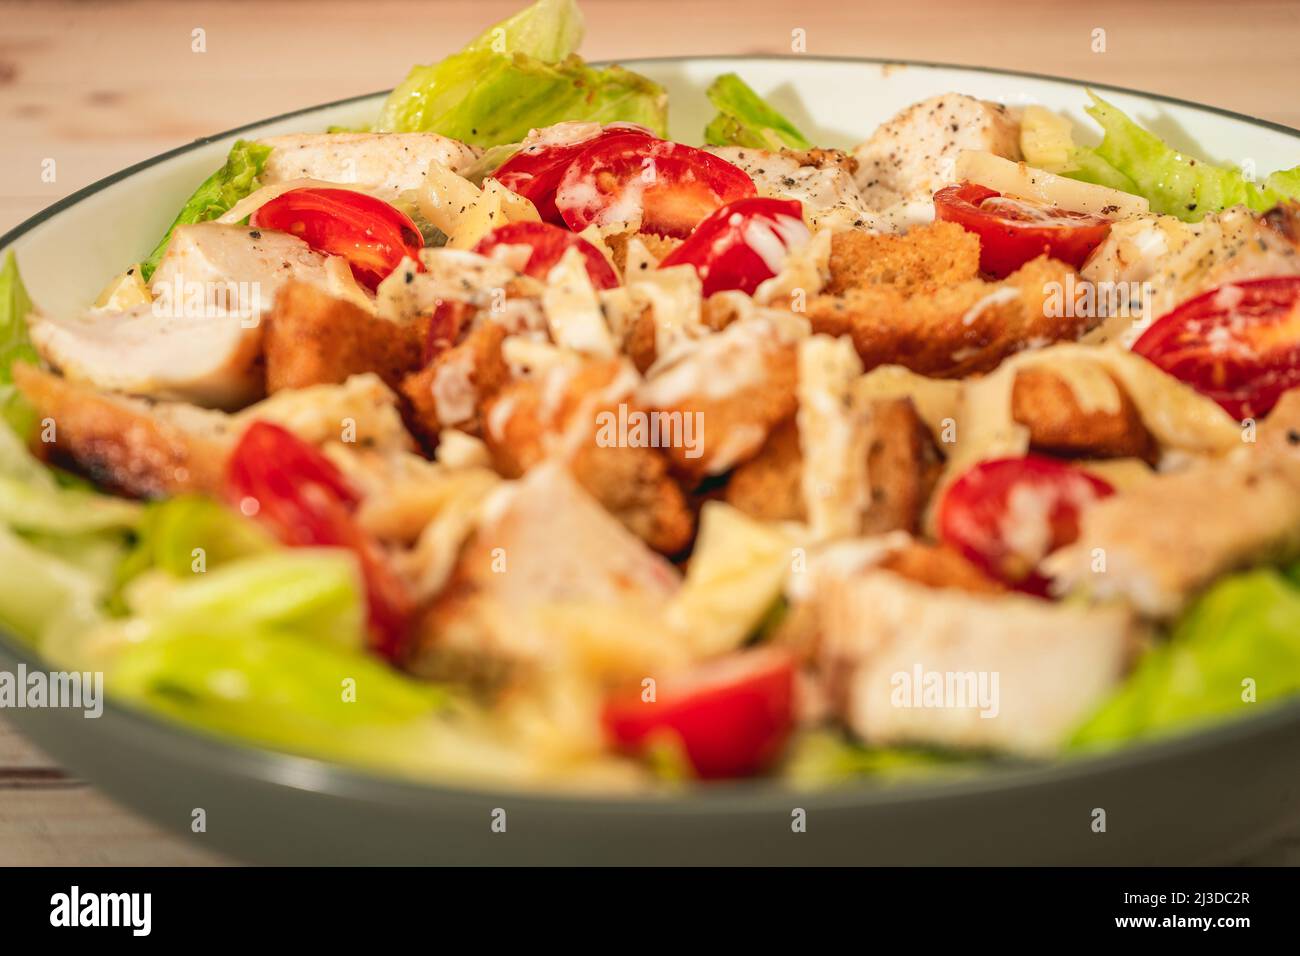 Variante de salade César avec de petites bouchées de poulet, de tomates cerises et une sauce aioli gastronomique dans un petit bol sur une table rustique. Vue en hauteur. Fermer-u Banque D'Images